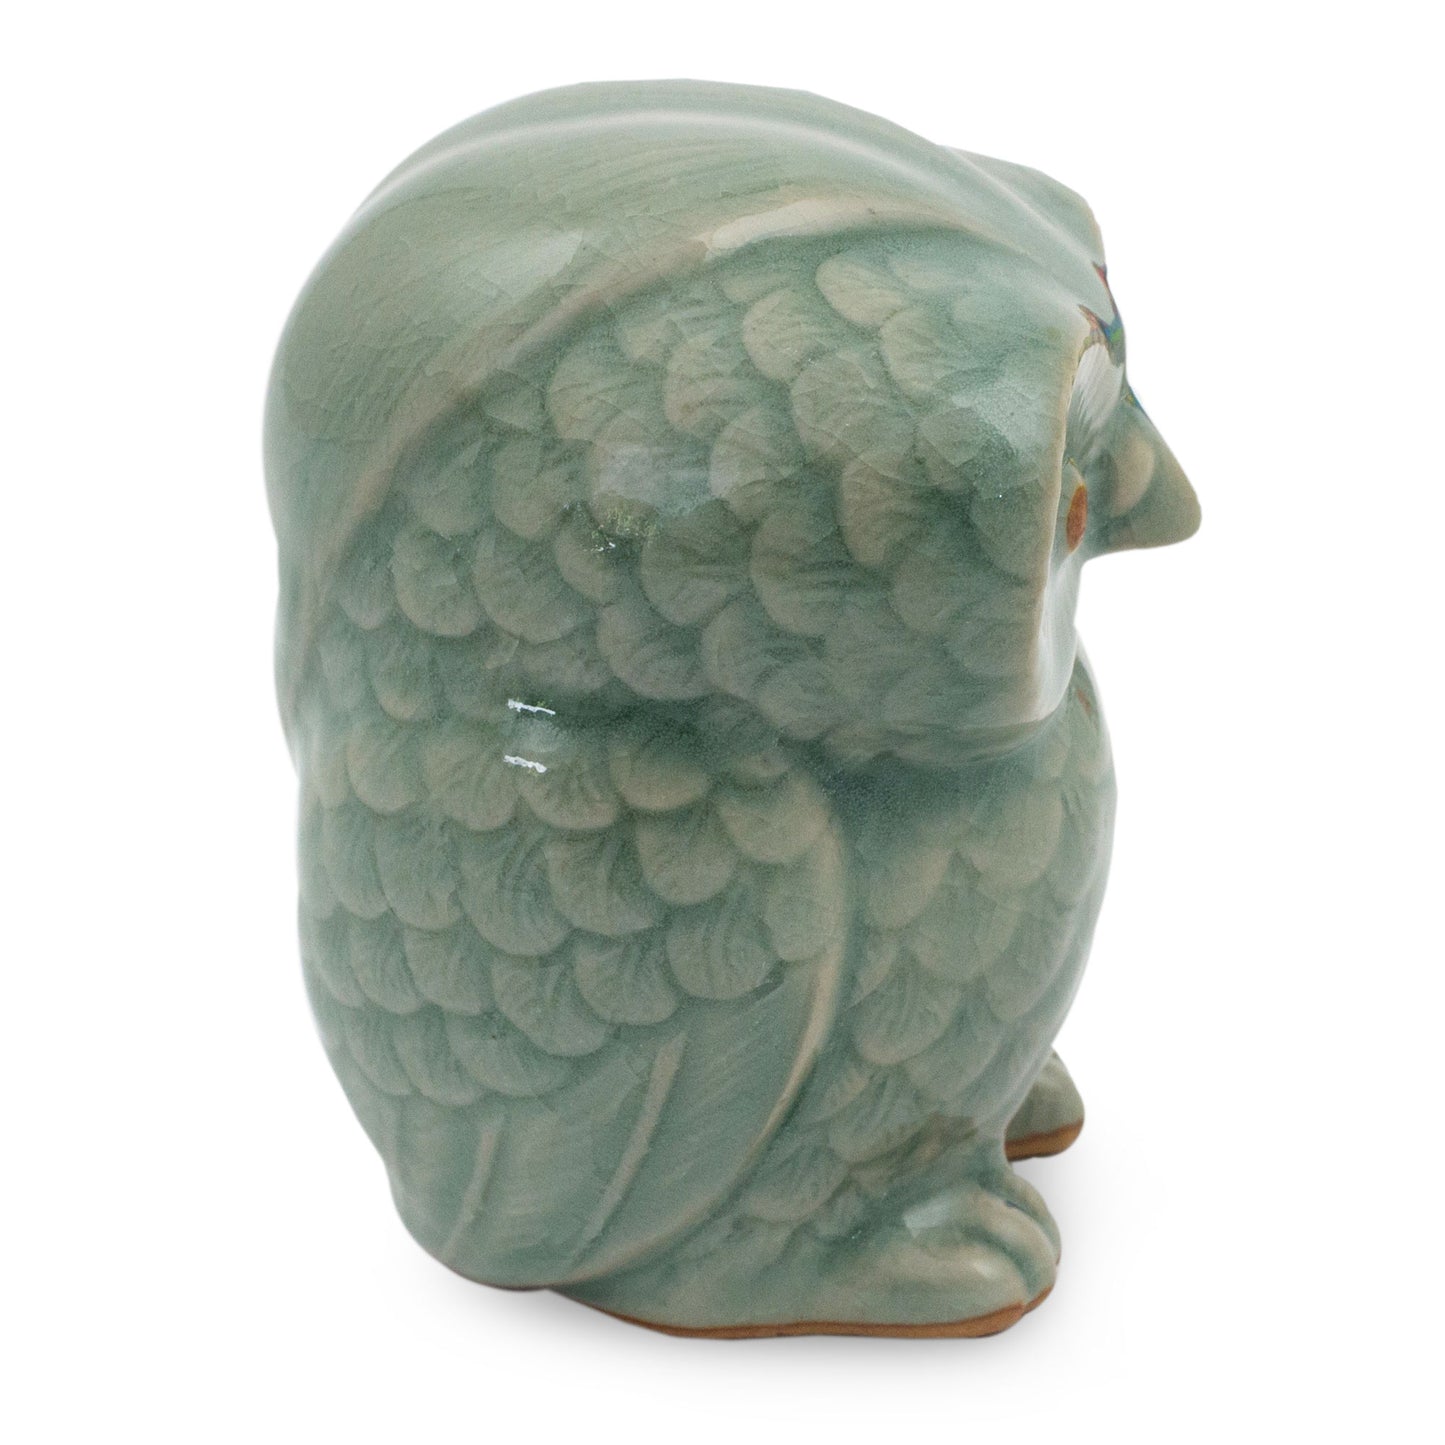 Little Blue Owl Ceramic Figurine